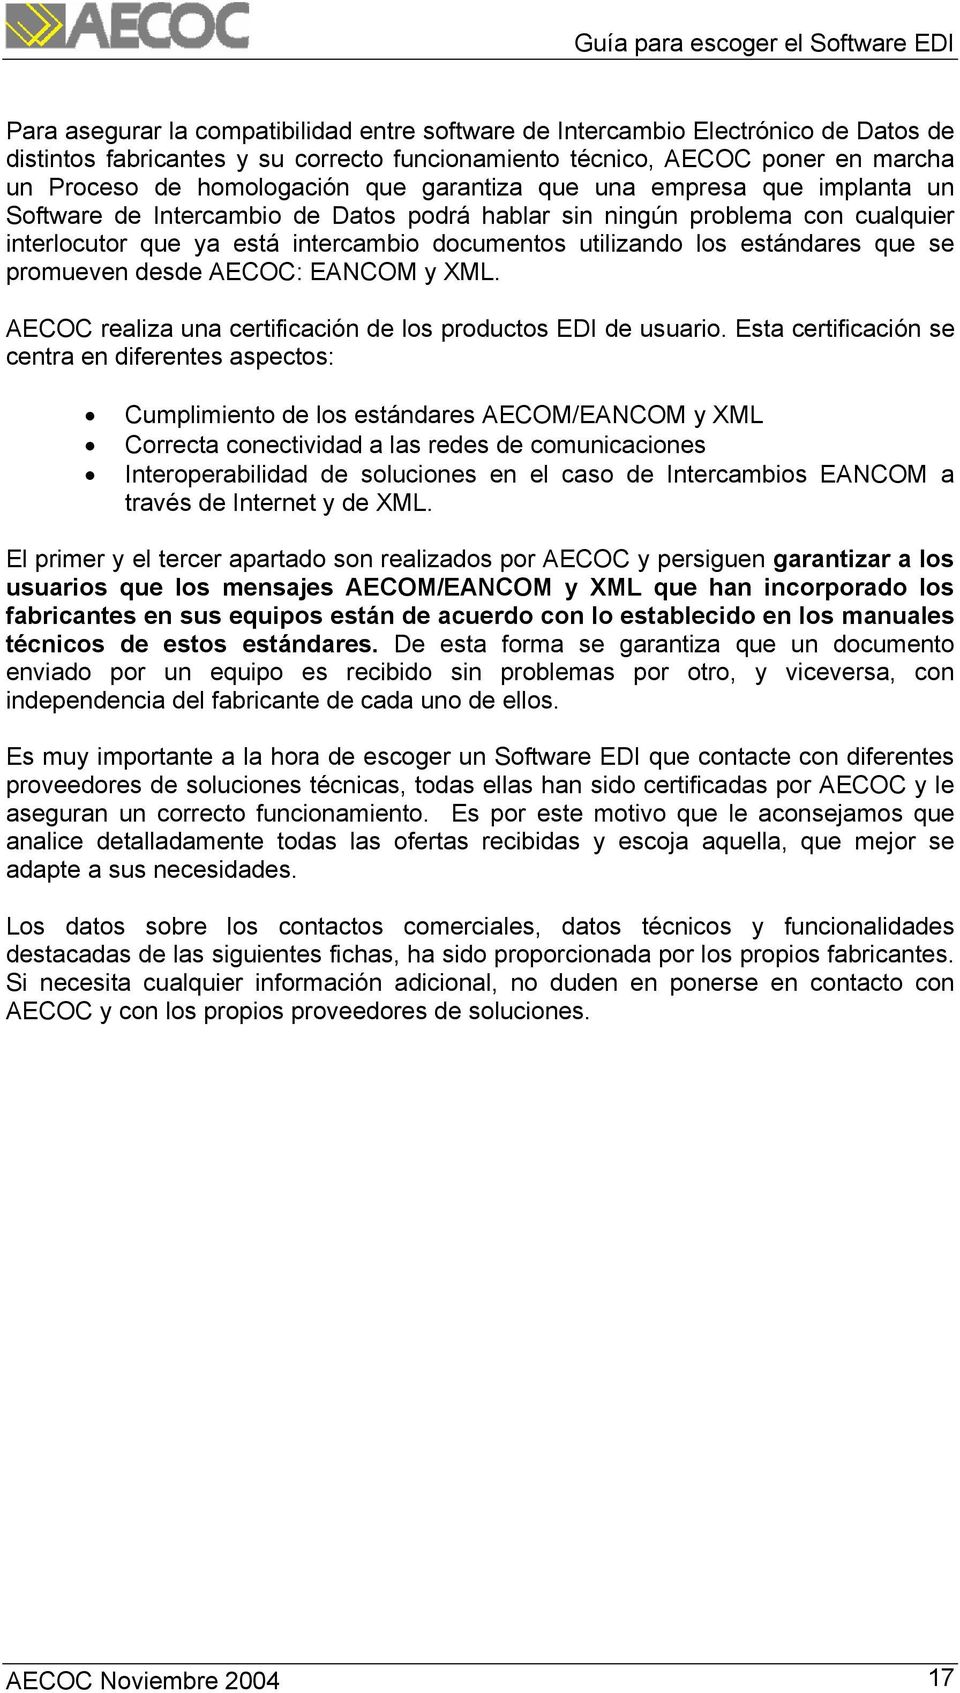 se promueven desde AECOC: EANCOM y XML. AECOC realiza una certificación de los productos EDI de usuario.